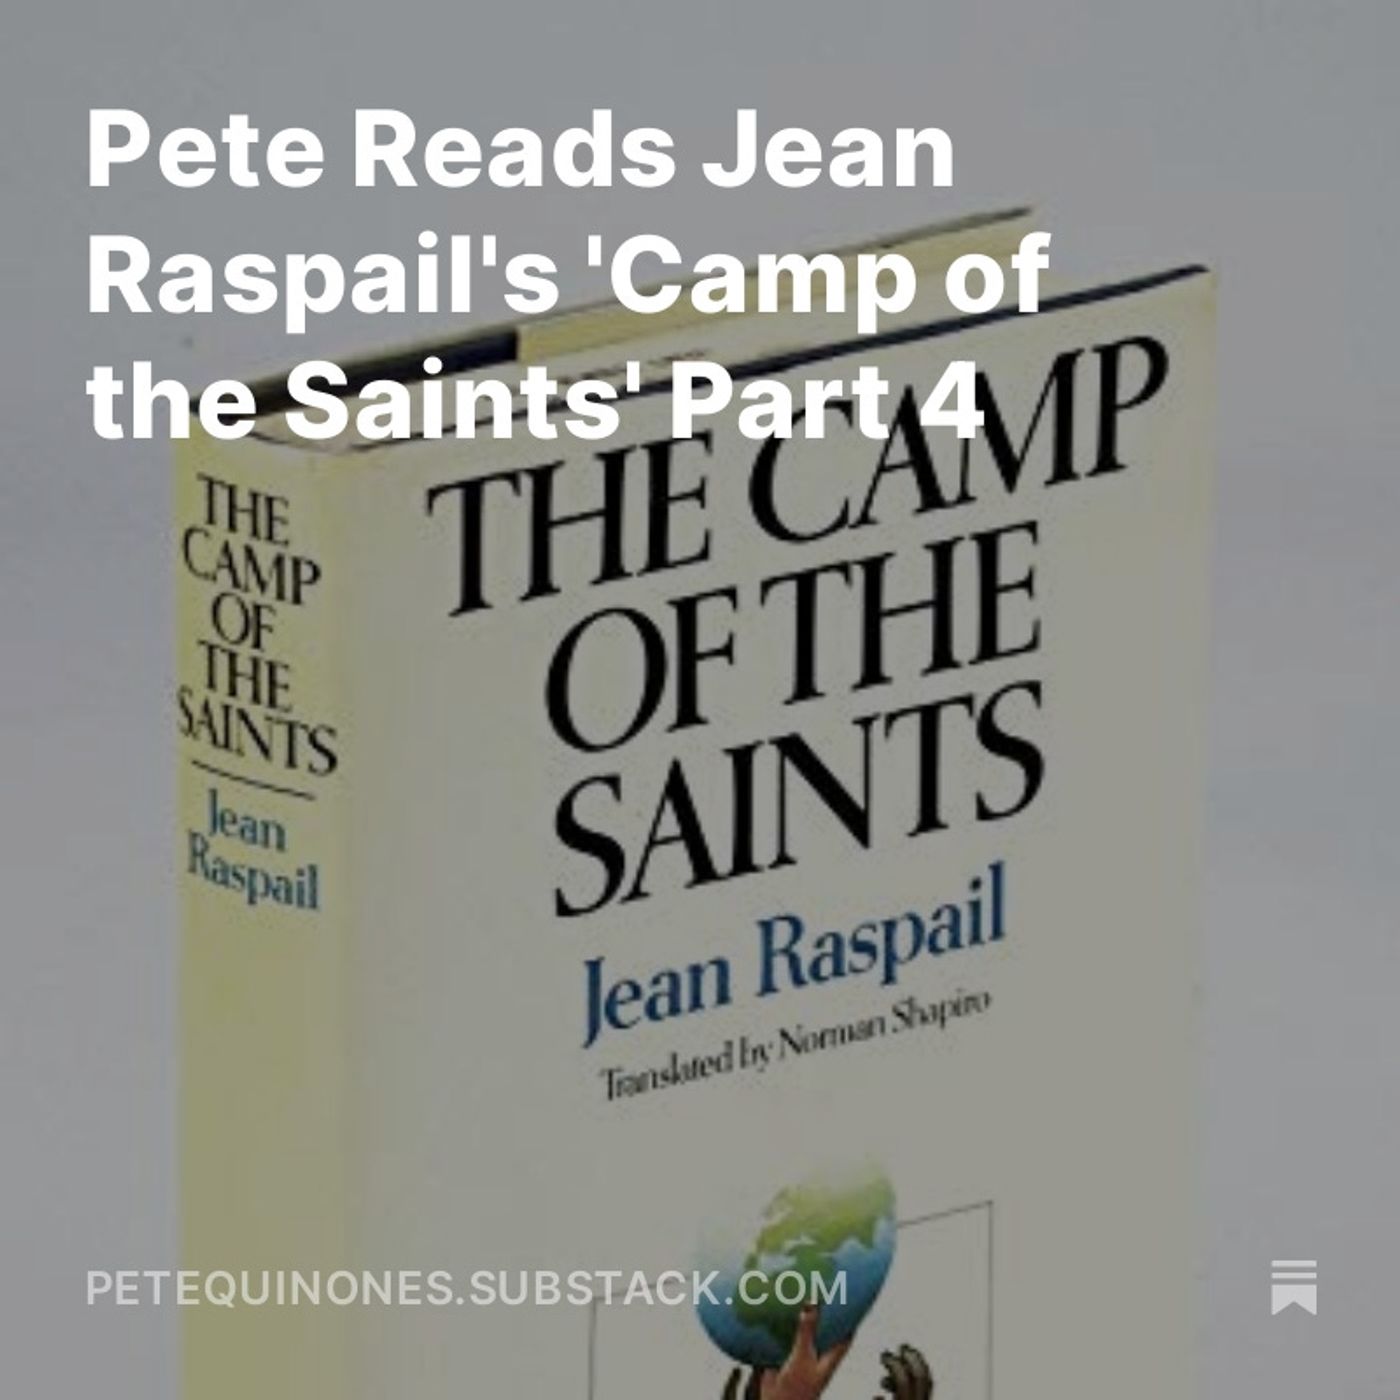 Pete Reads Jean Raspail's 'Camp of the Saints' Part 4